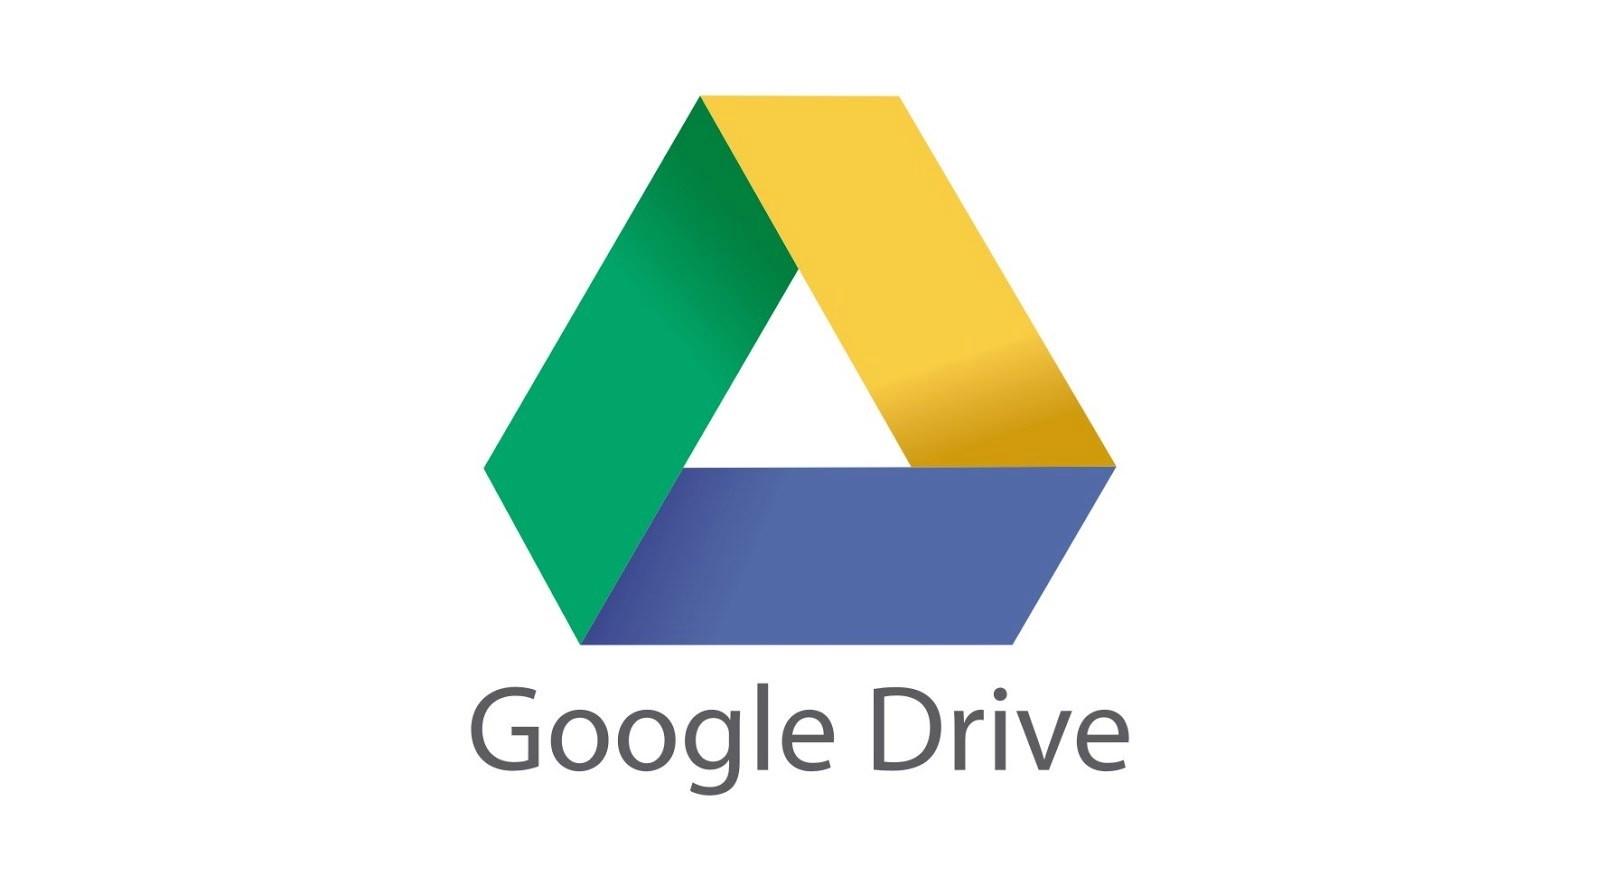 Google Drive’daki hata bazı kullanıcılara büyük veri kayıpları yaşatıyor